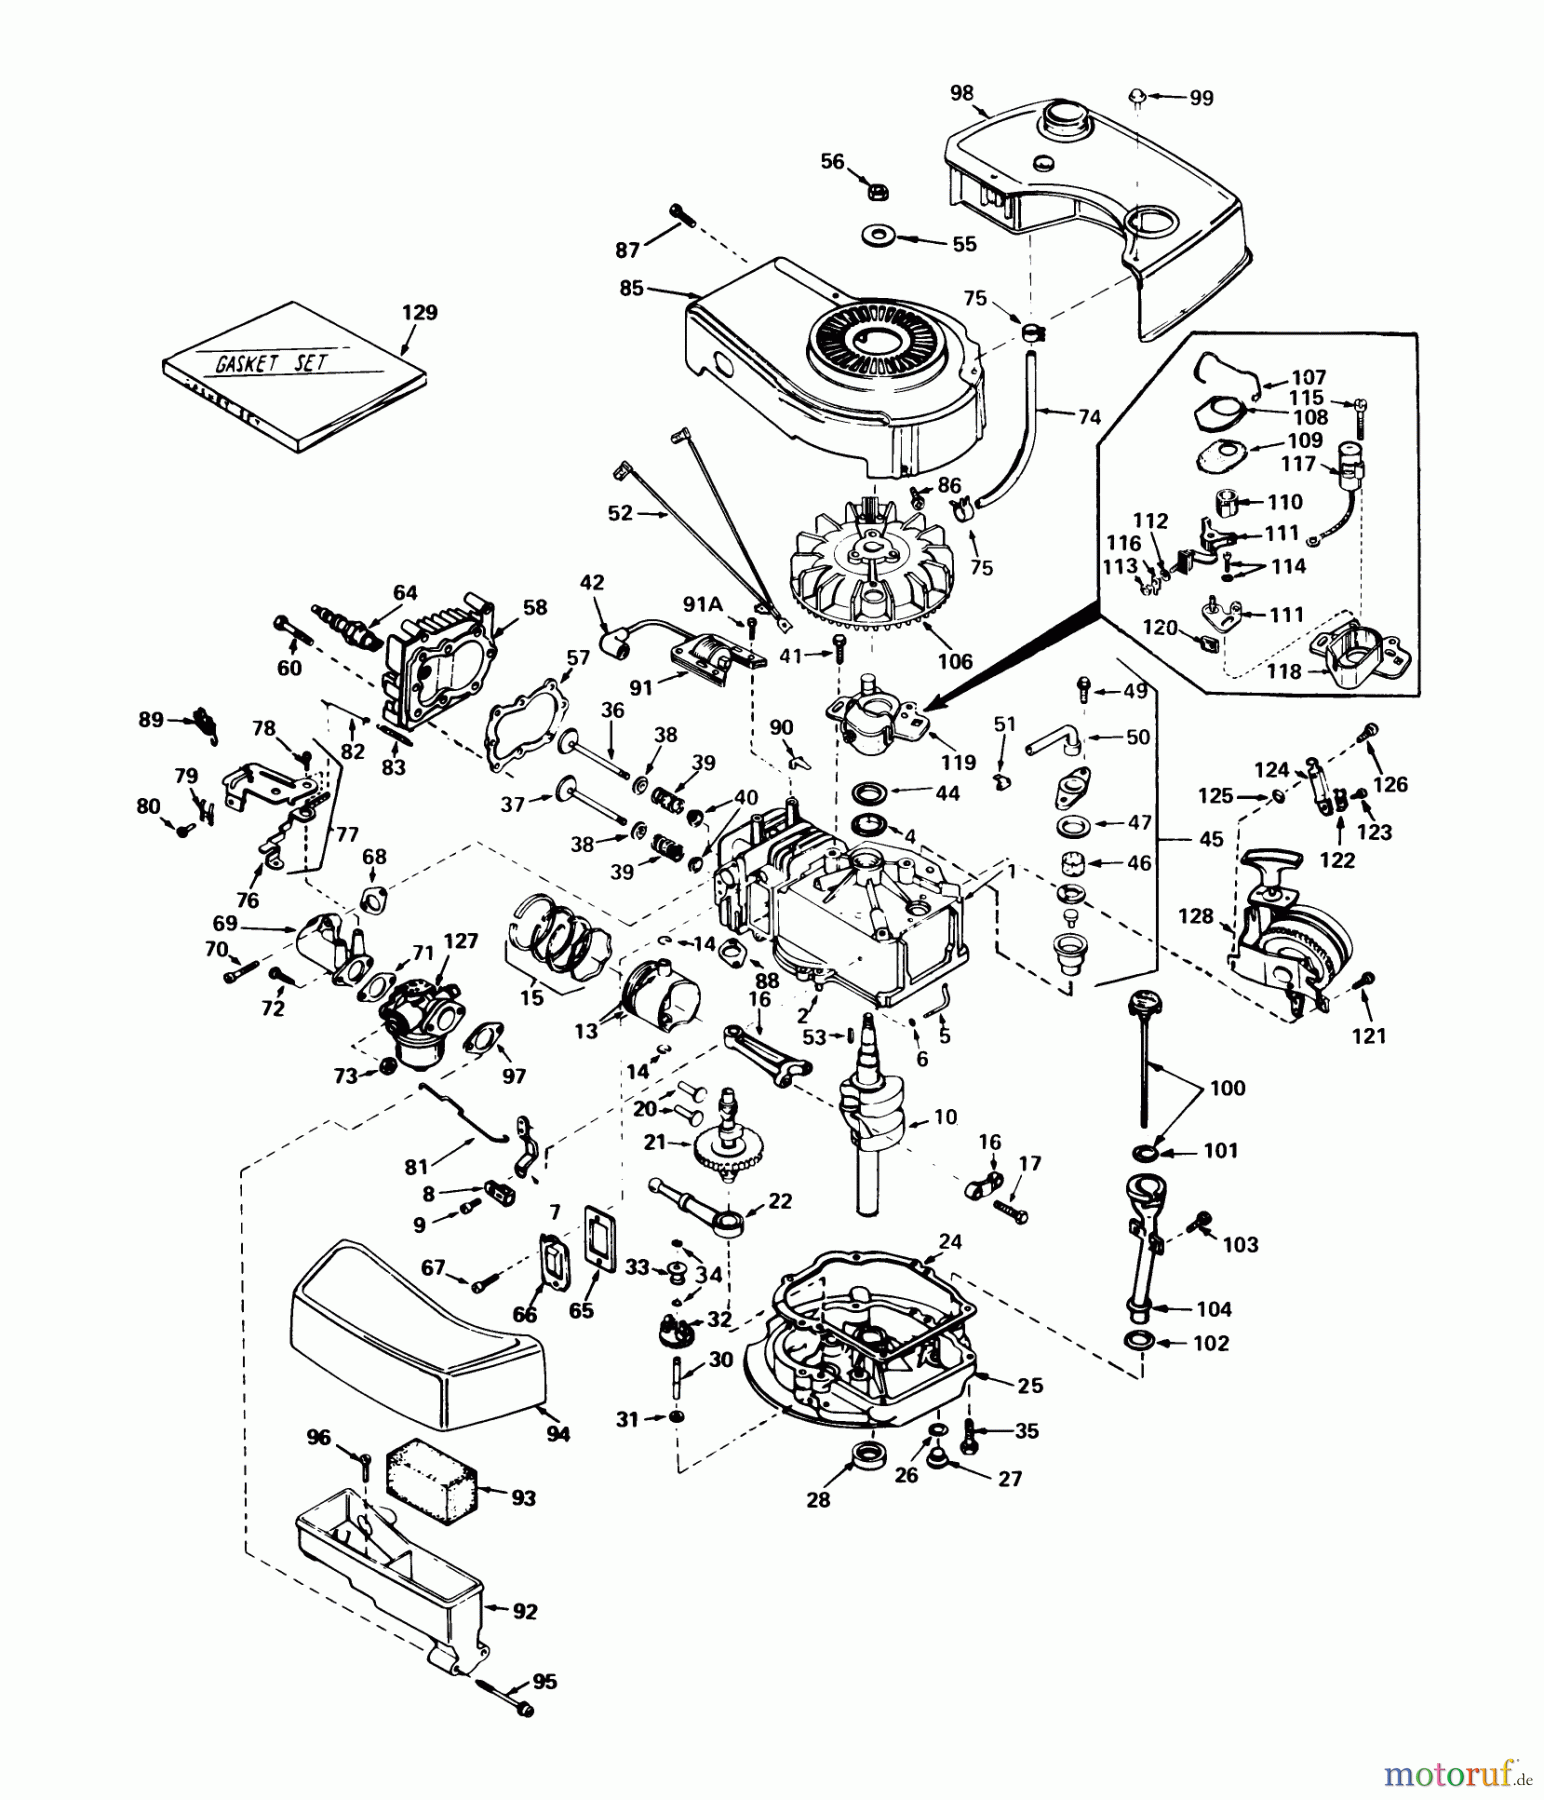  Toro Neu Mowers, Walk-Behind Seite 1 20610 - Toro Lawnmower, 1979 (9000001-9999999) ENGINE TECUMSEH MODEL NO. TNT 100-10063C